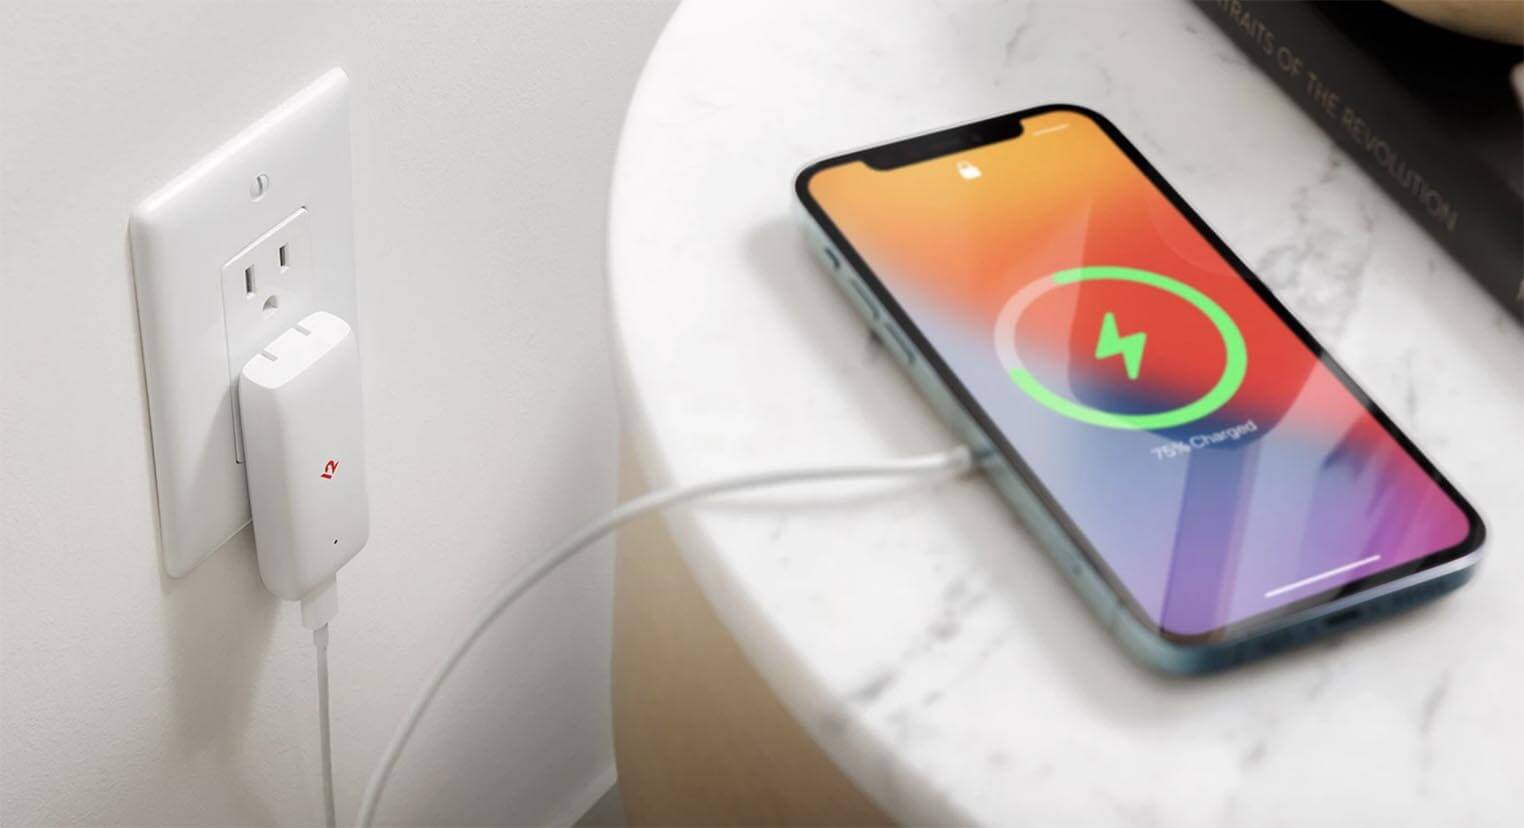 ویژگی جدید آیفون همراه با iOS 16.1: شارژ با انرژی پاک چیست؟ و چه کار میکند؟